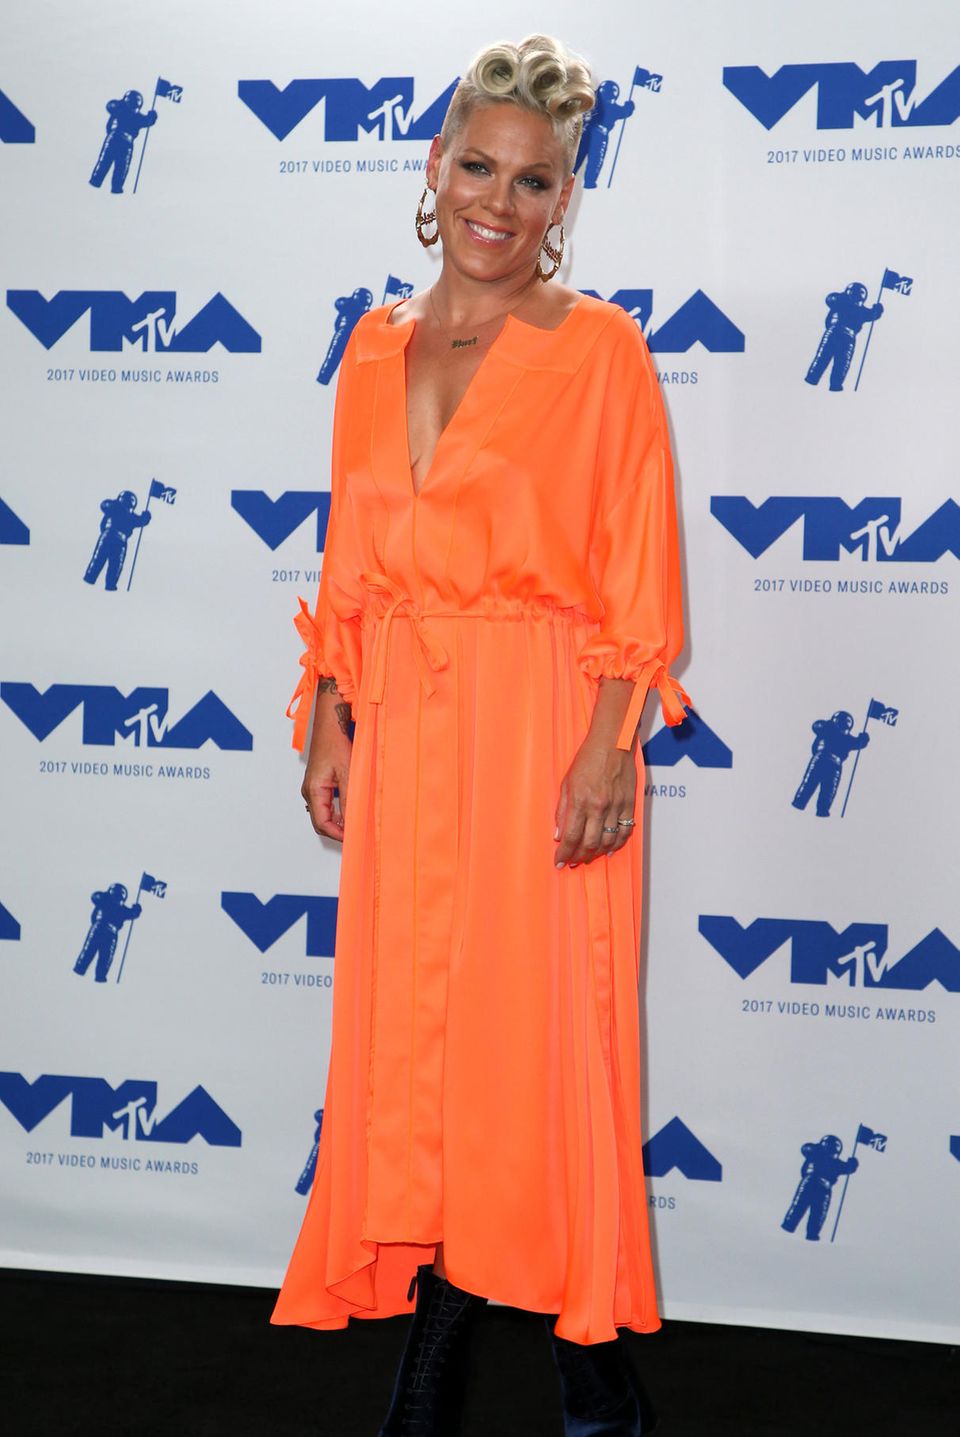 Pink in Orange: Leider ist uns dieser zweite VMA-Look für so eine tolle Frau etwas zu langweilig.